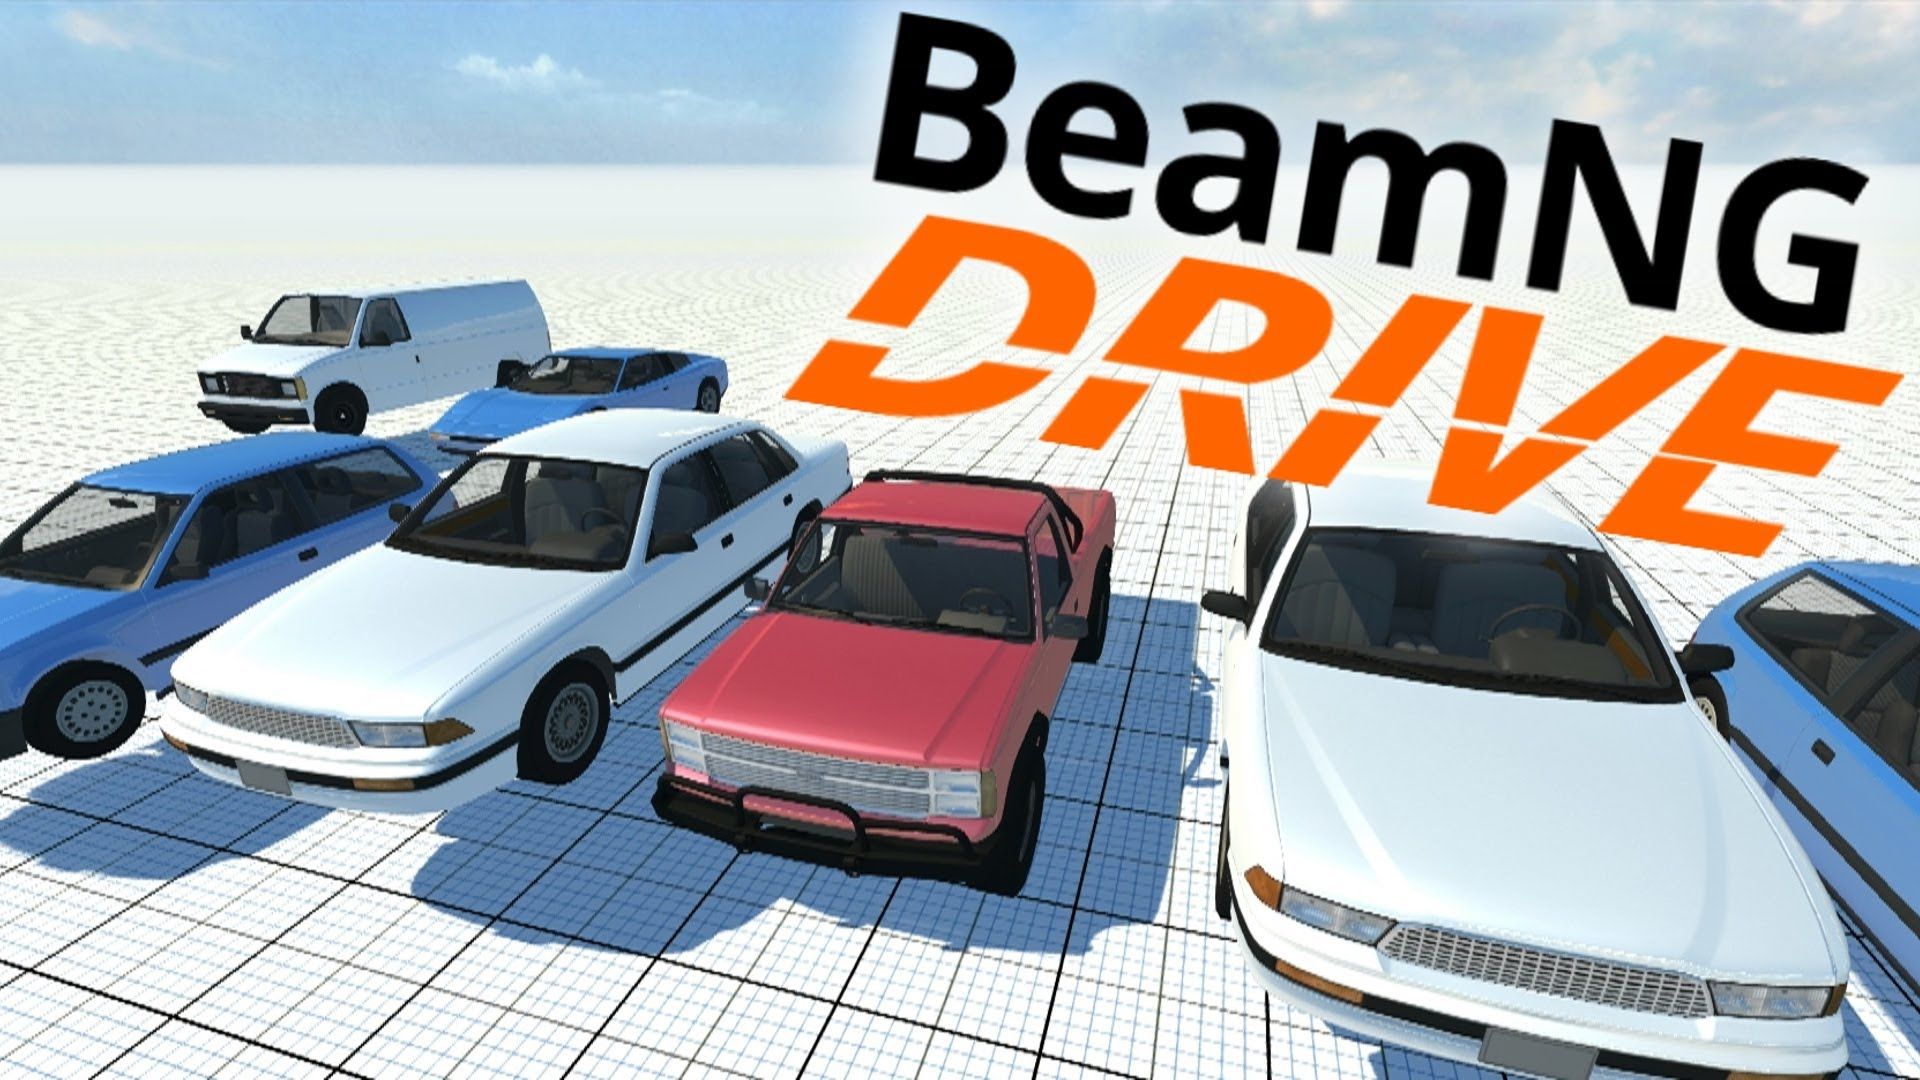 beamng drive logo